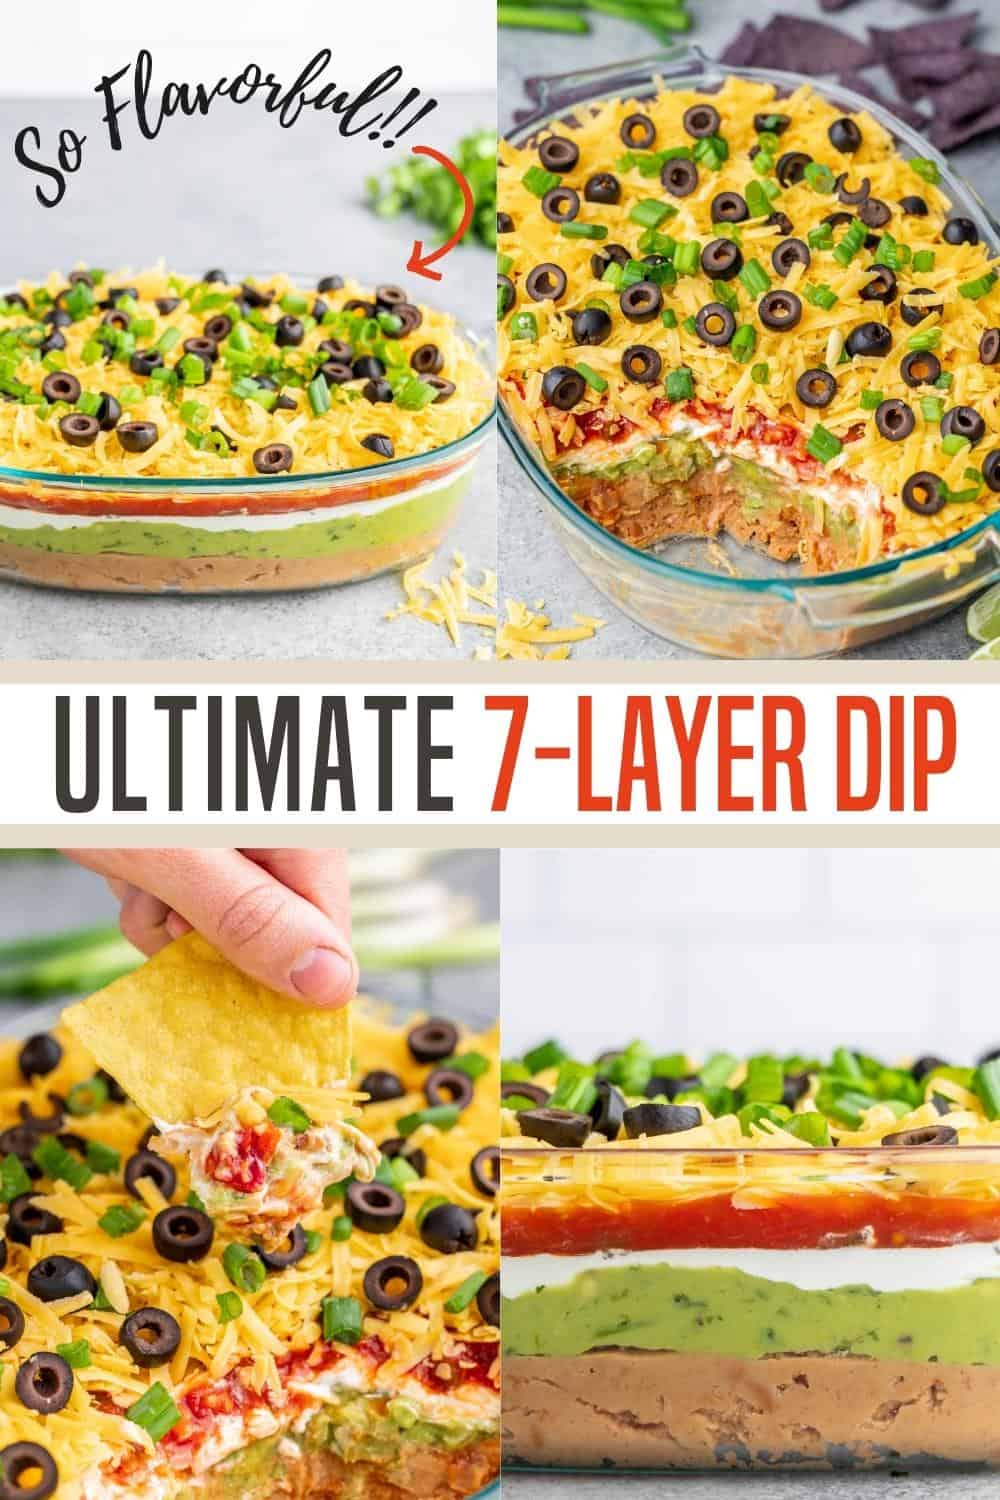 Ultimate 7 Layer Dip